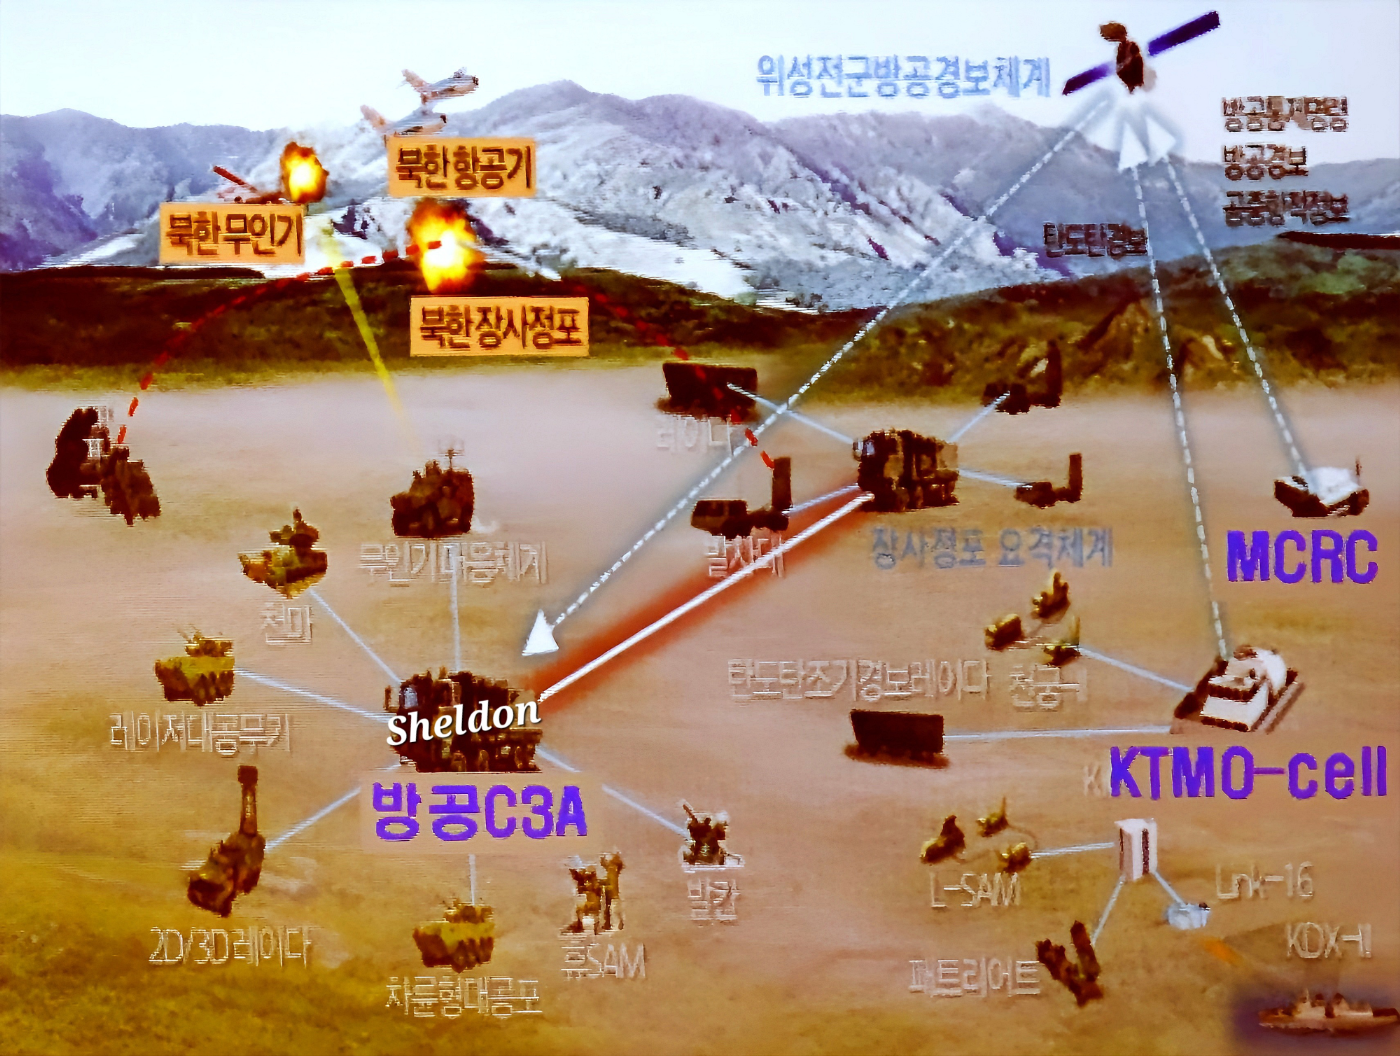 미래지상전력기획 심포지엄에서 소개된 육군 ADC3A 개념도. MCRC와 직접 연동하지 않고 SAWS에서 전달하는 방공경보만 활용하는 것을 알 수 있다.